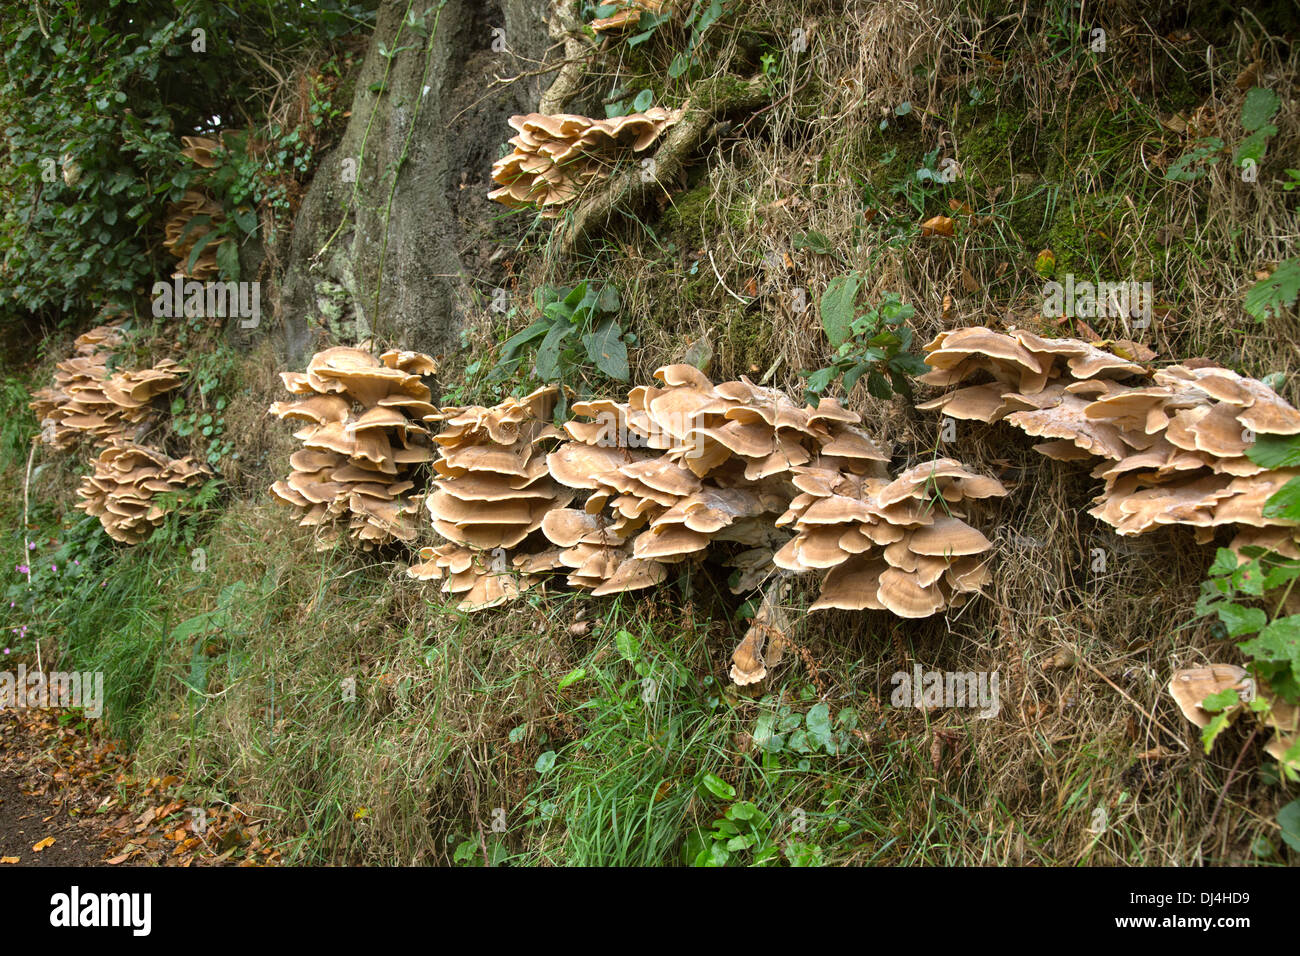 Halterung Pilze wachsen auf einem Exmoor Land Lane Hedge-Bank, Somerset, England, UK Stockfoto